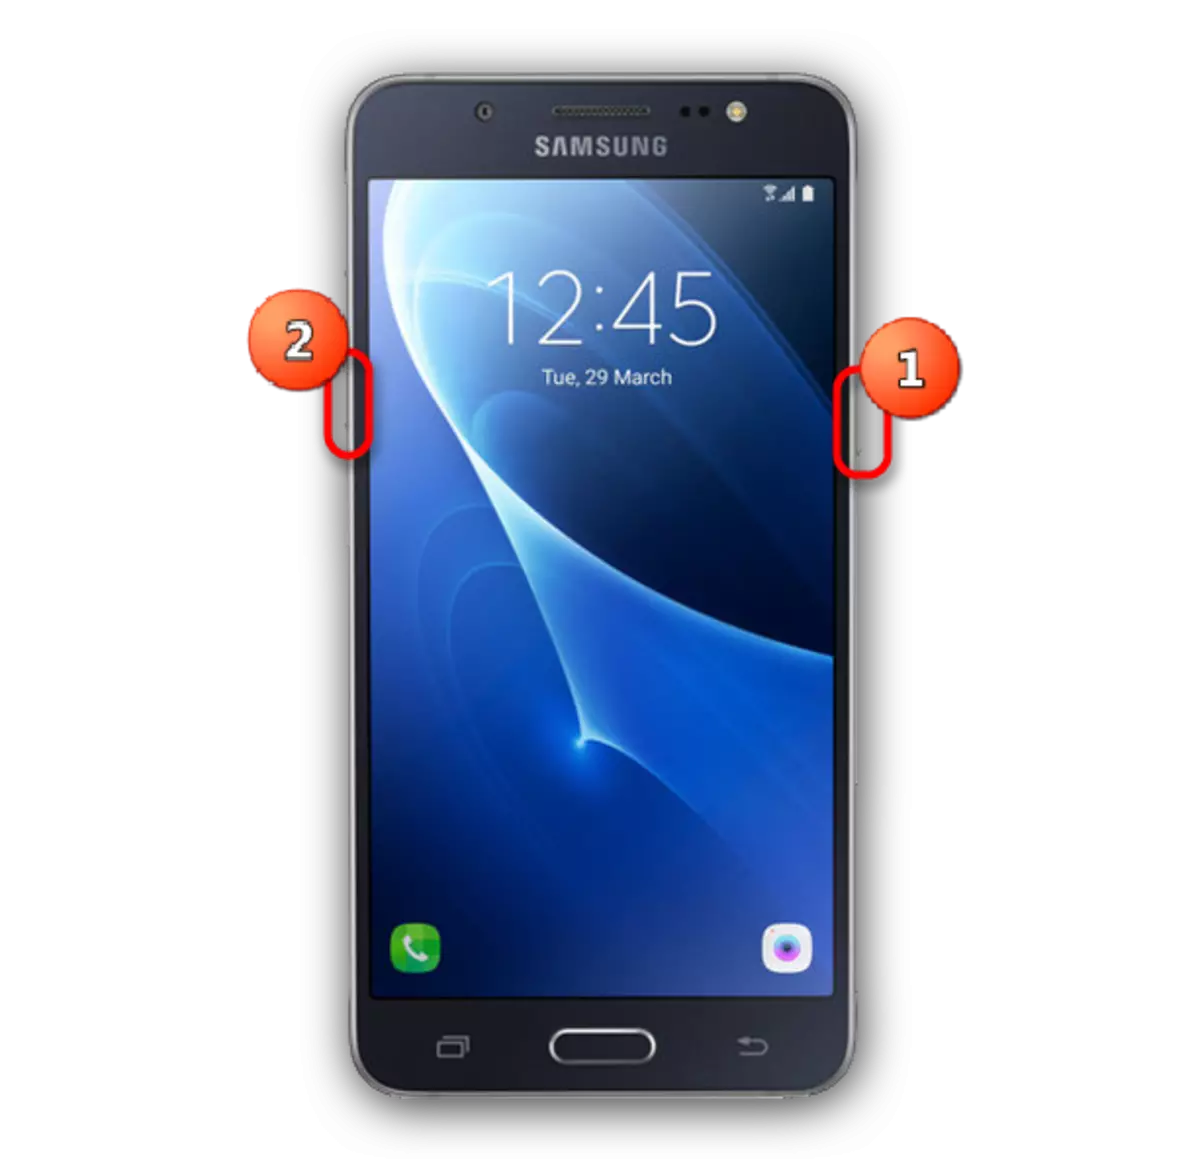 Samsung Smartphone Reboot Knäppchen